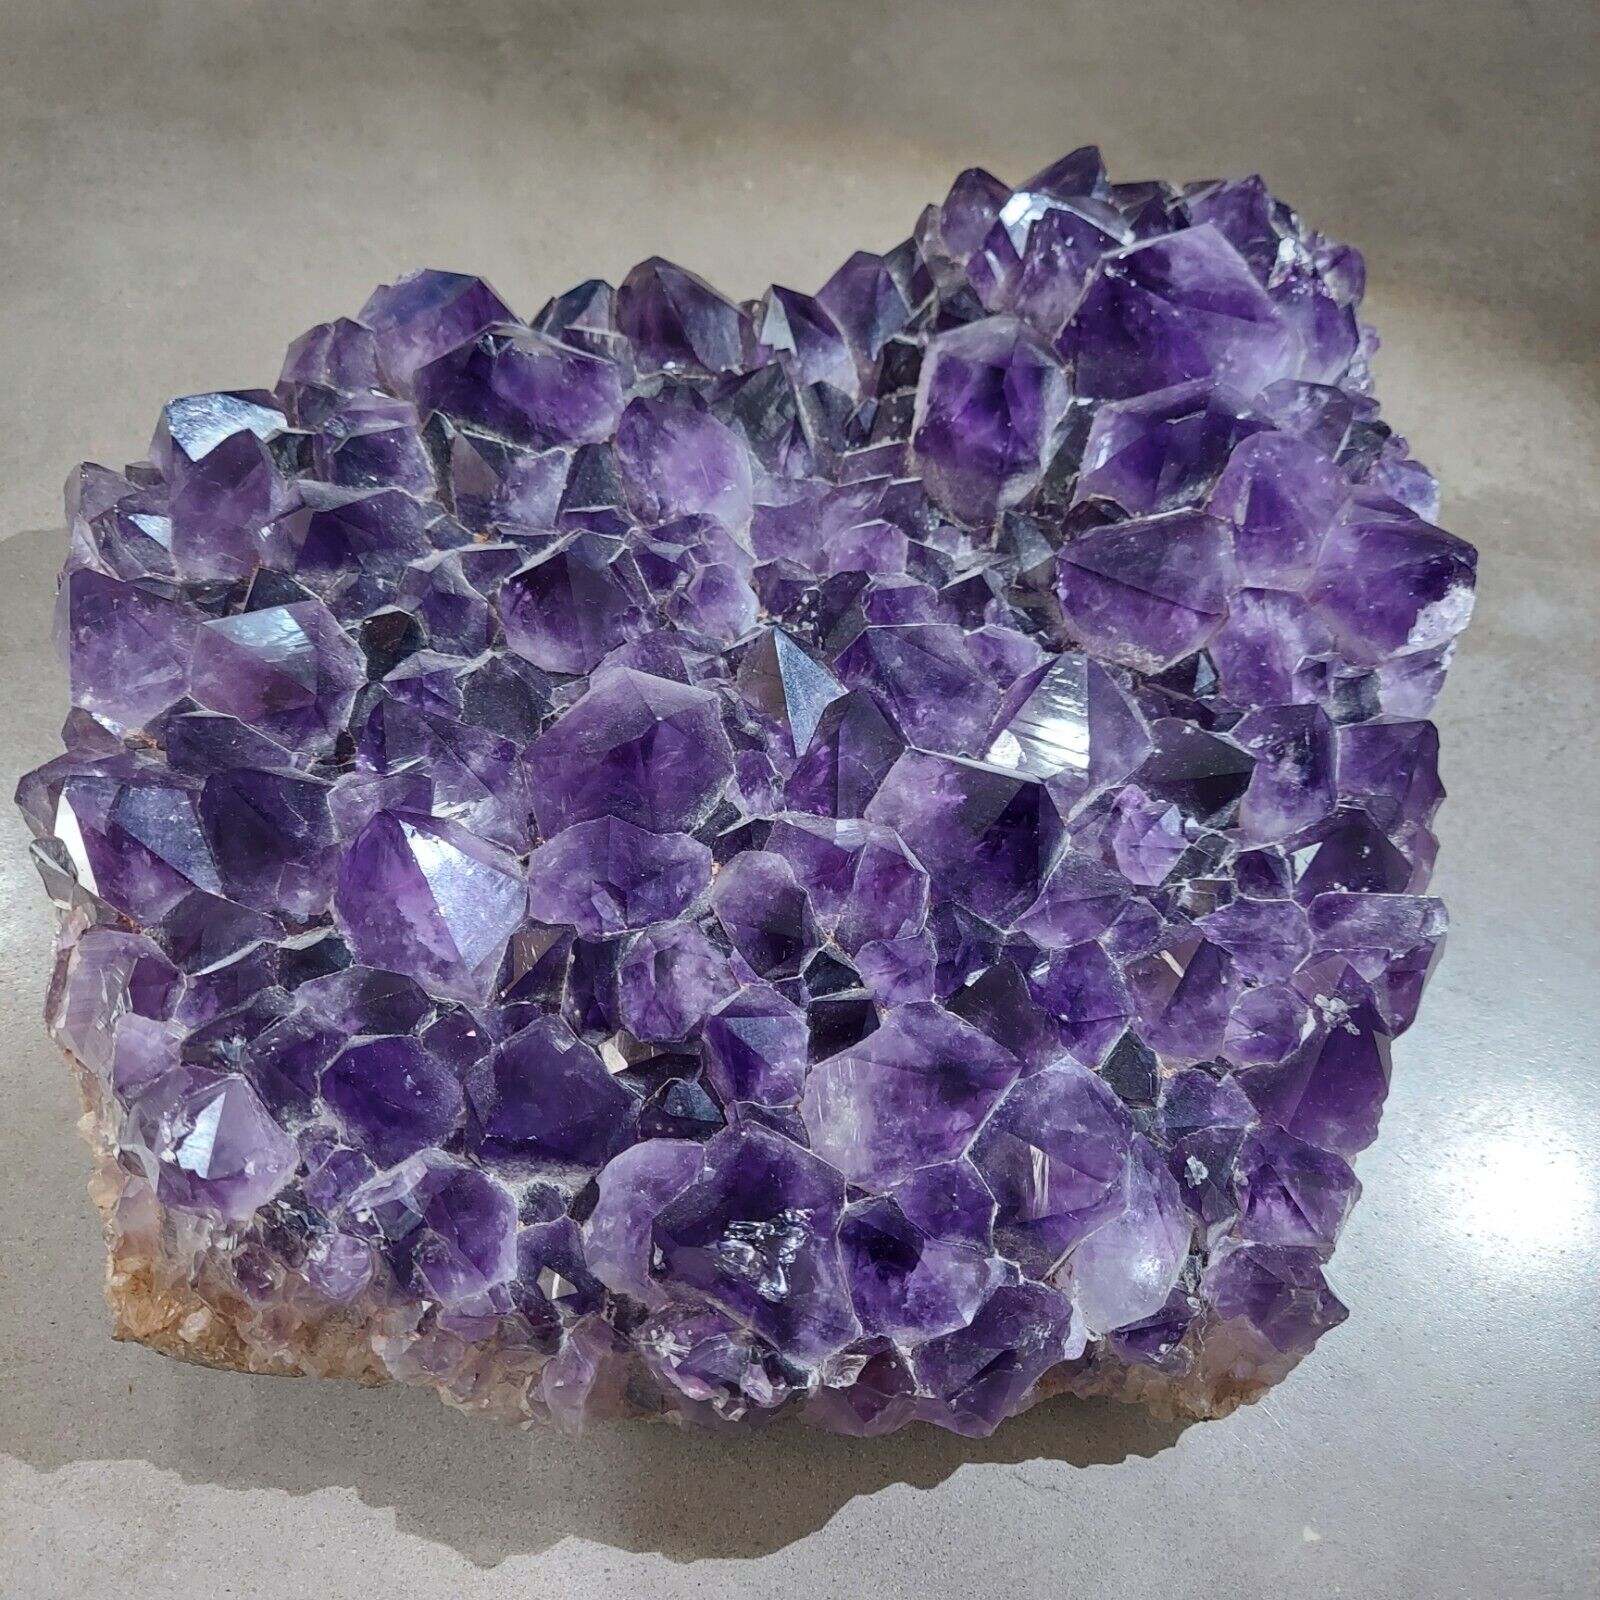 23.67 LB LARGE Natural Amethyst Crystal Cluster, geode quartz specimen Healing